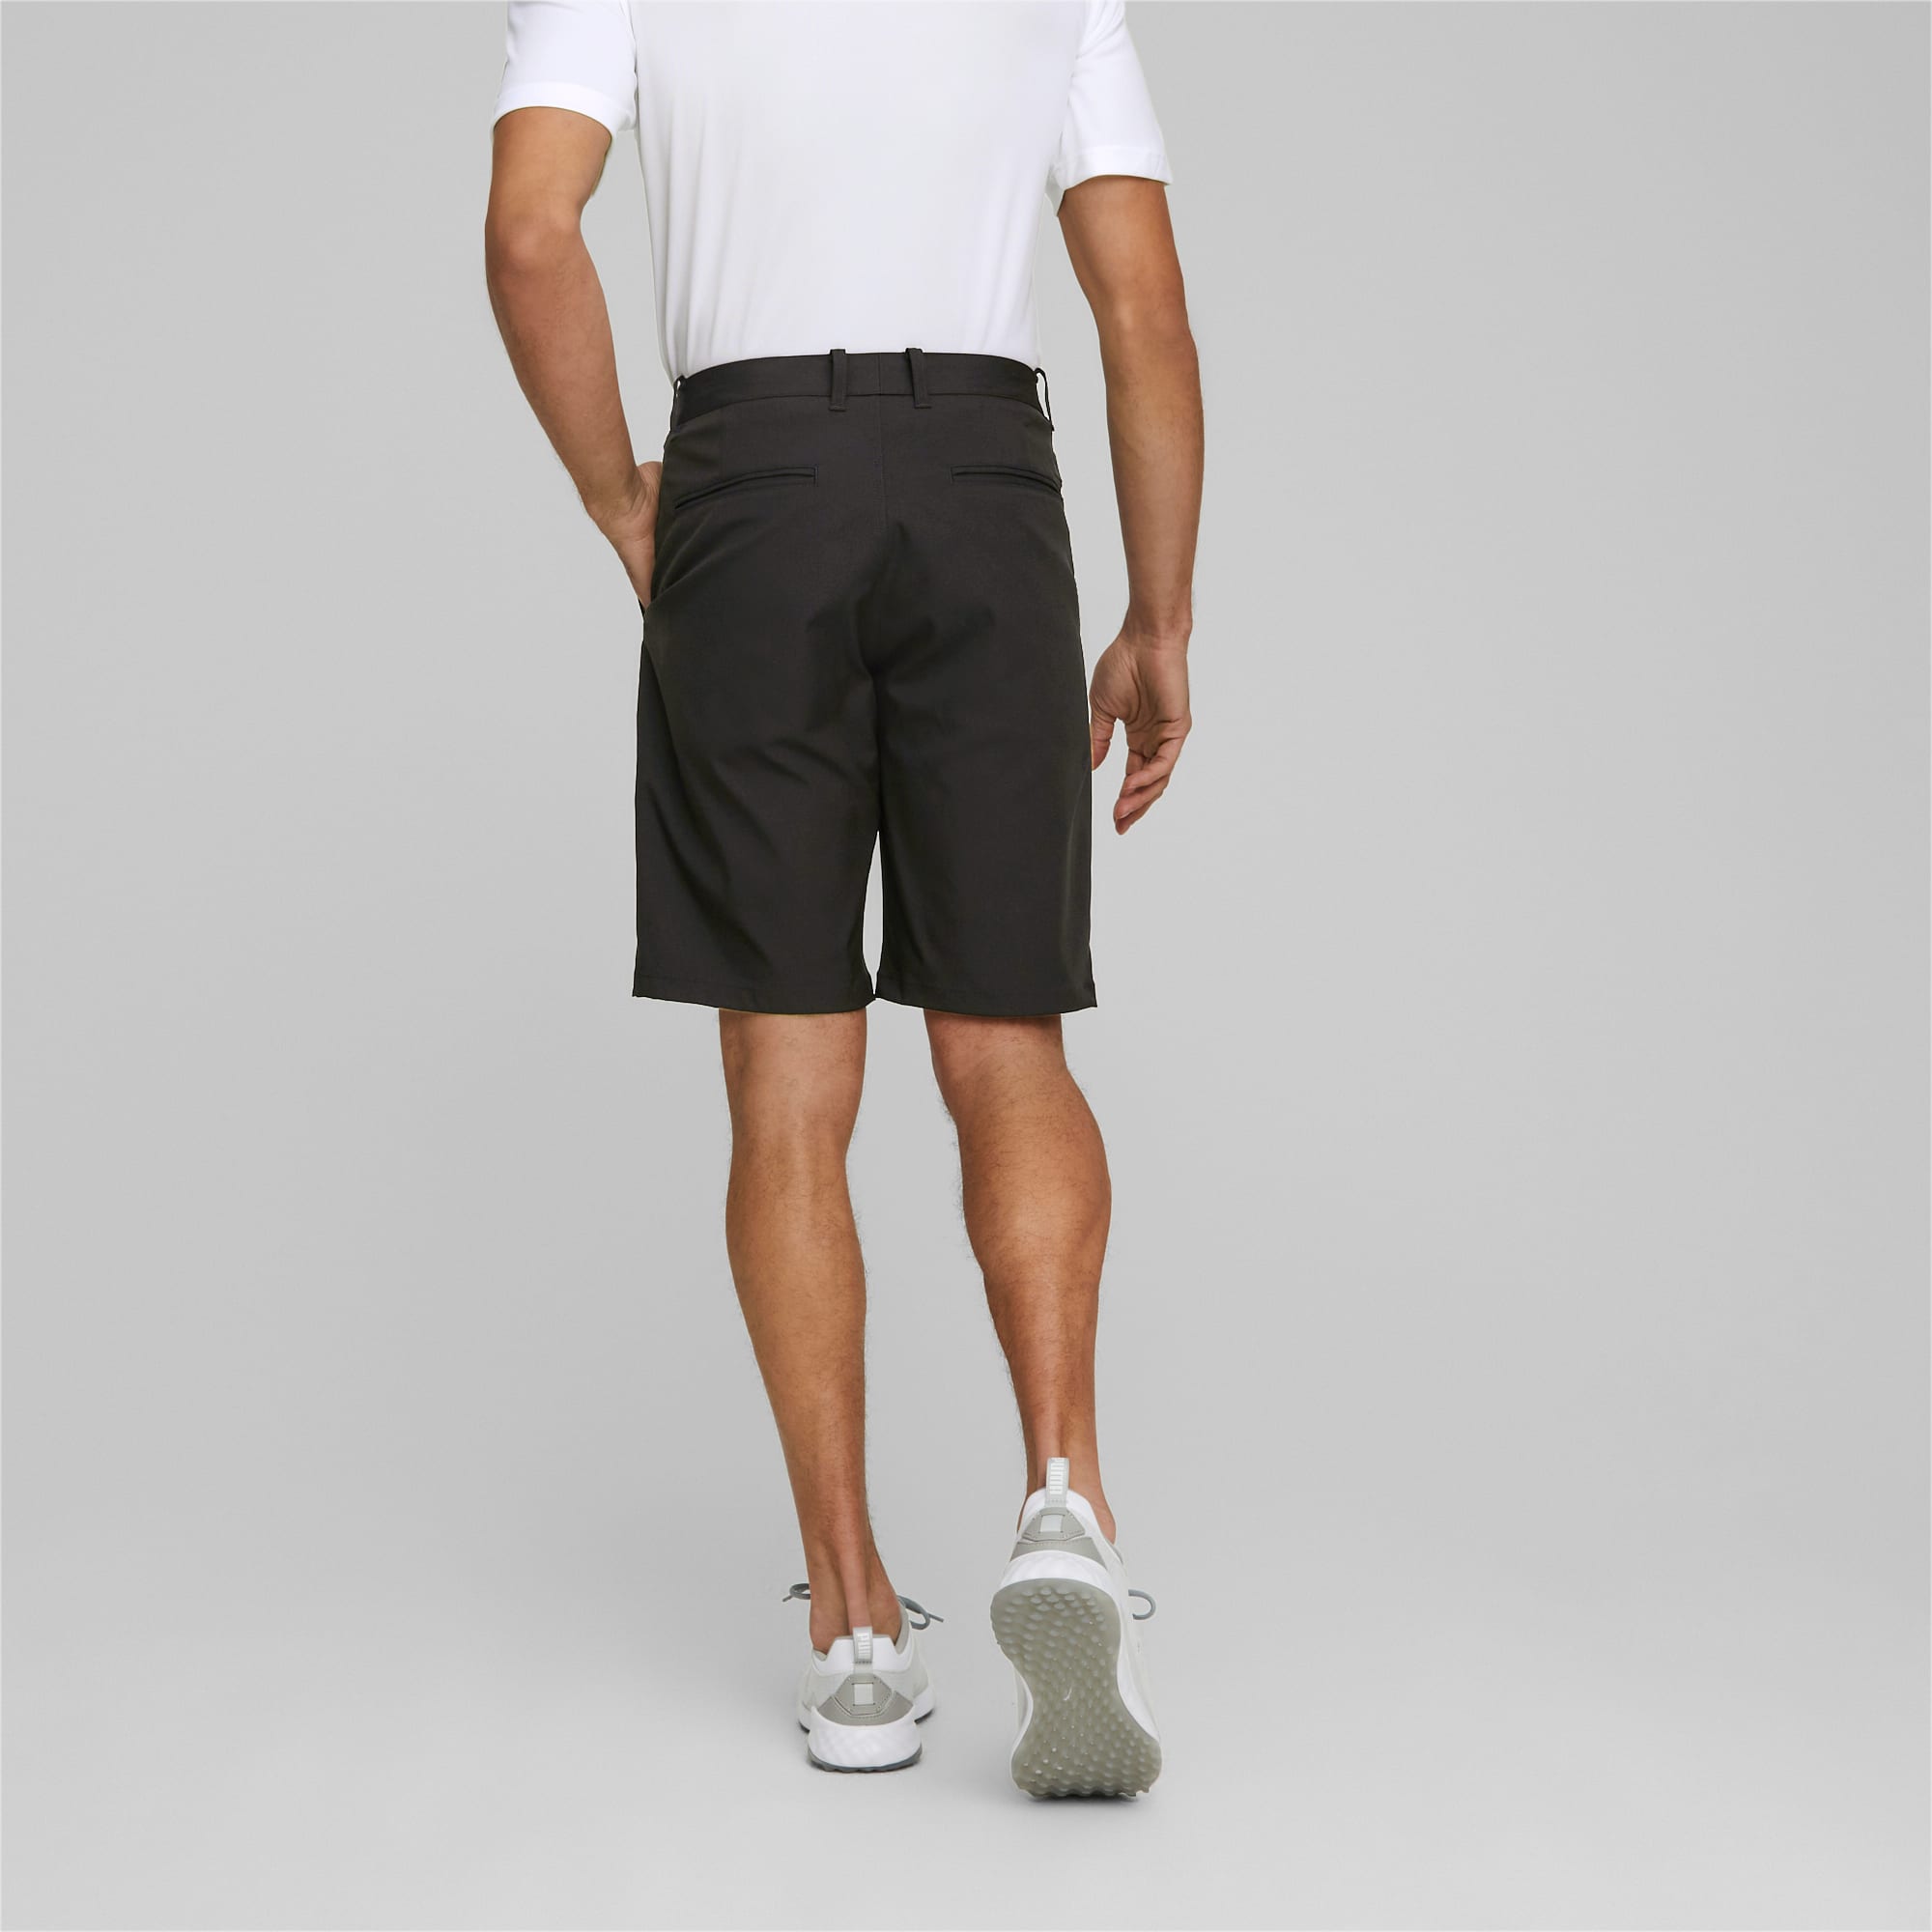 PUMA Shorts De Golf Dealer 10 Para Hombre, Negro